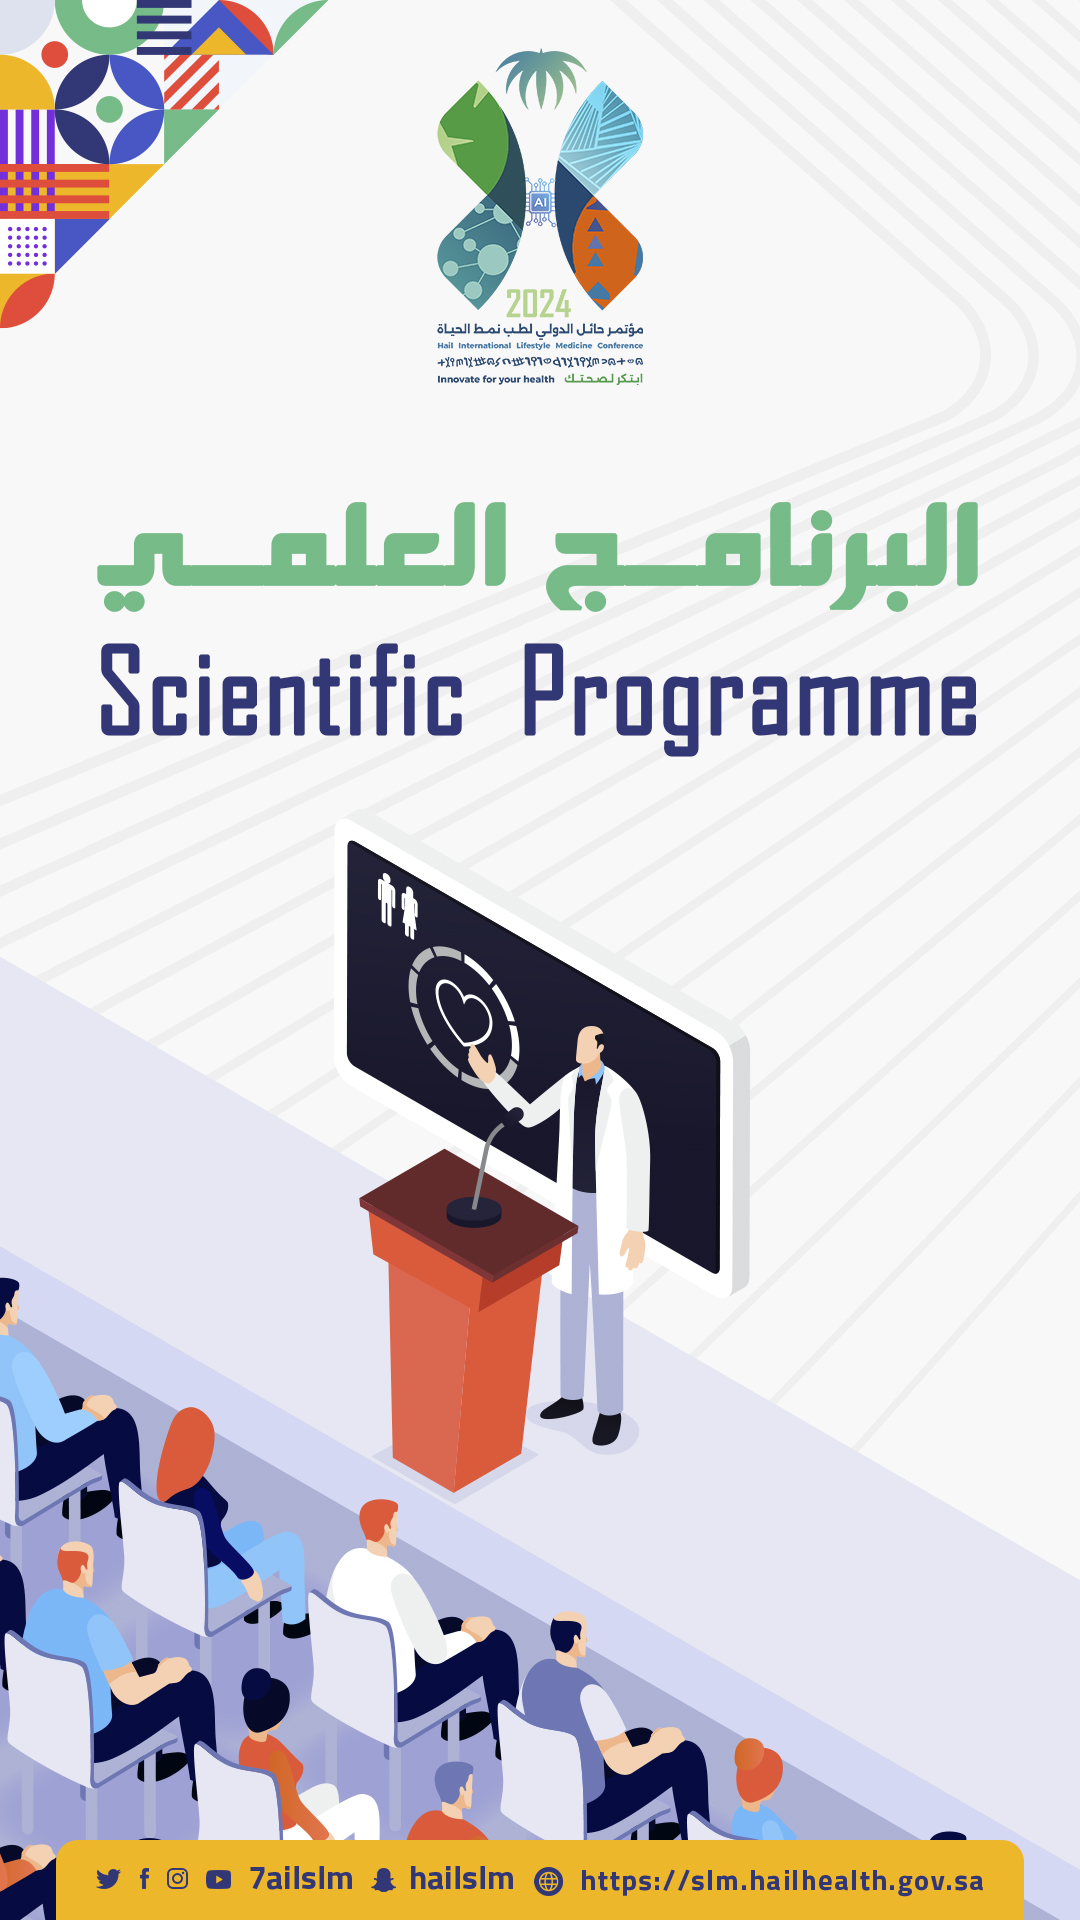 Scientific program